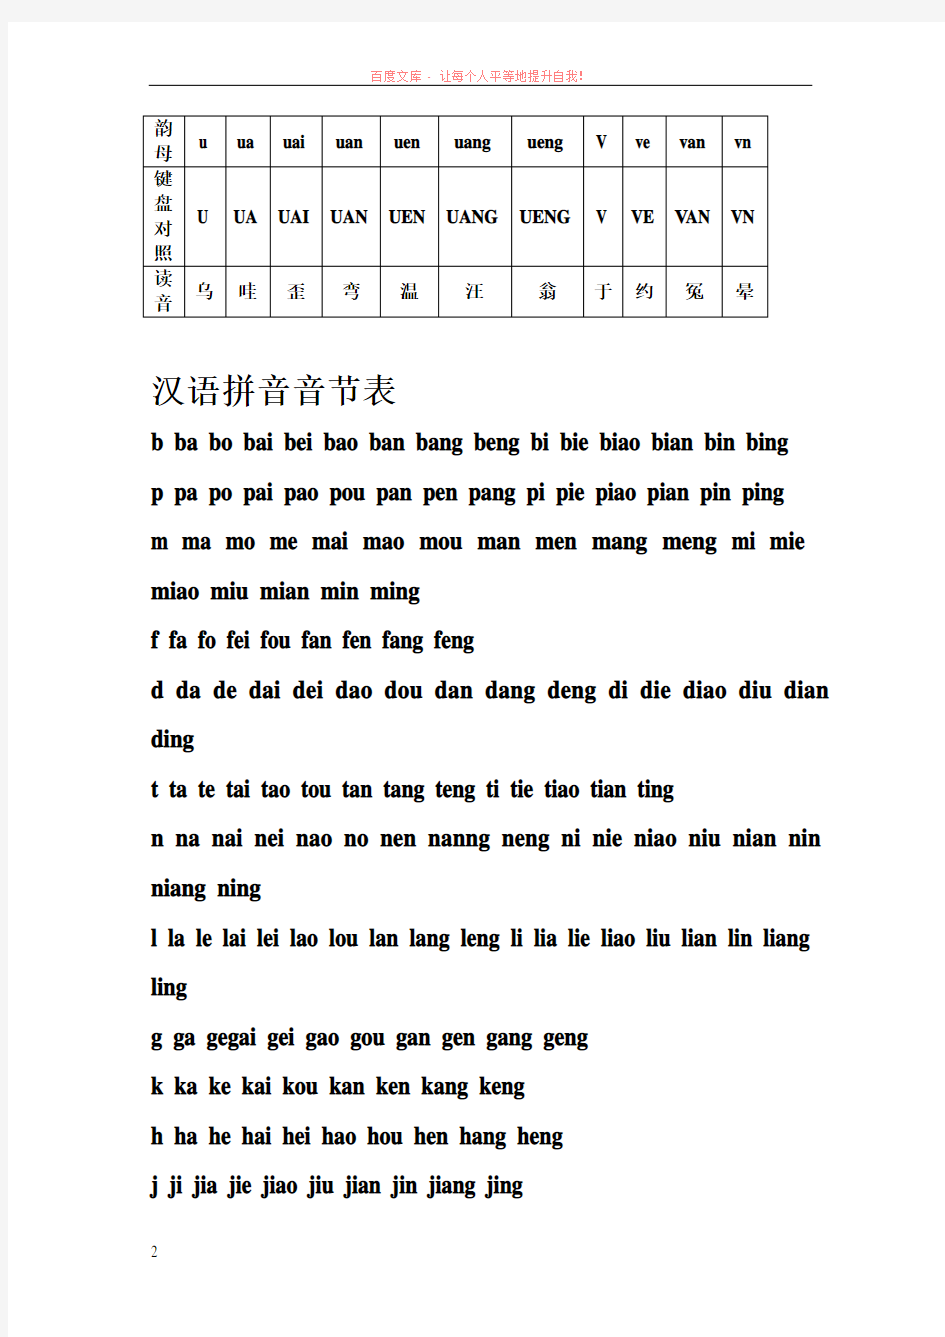 汉语拼音字母表与键盘对照学习打字法 (1)